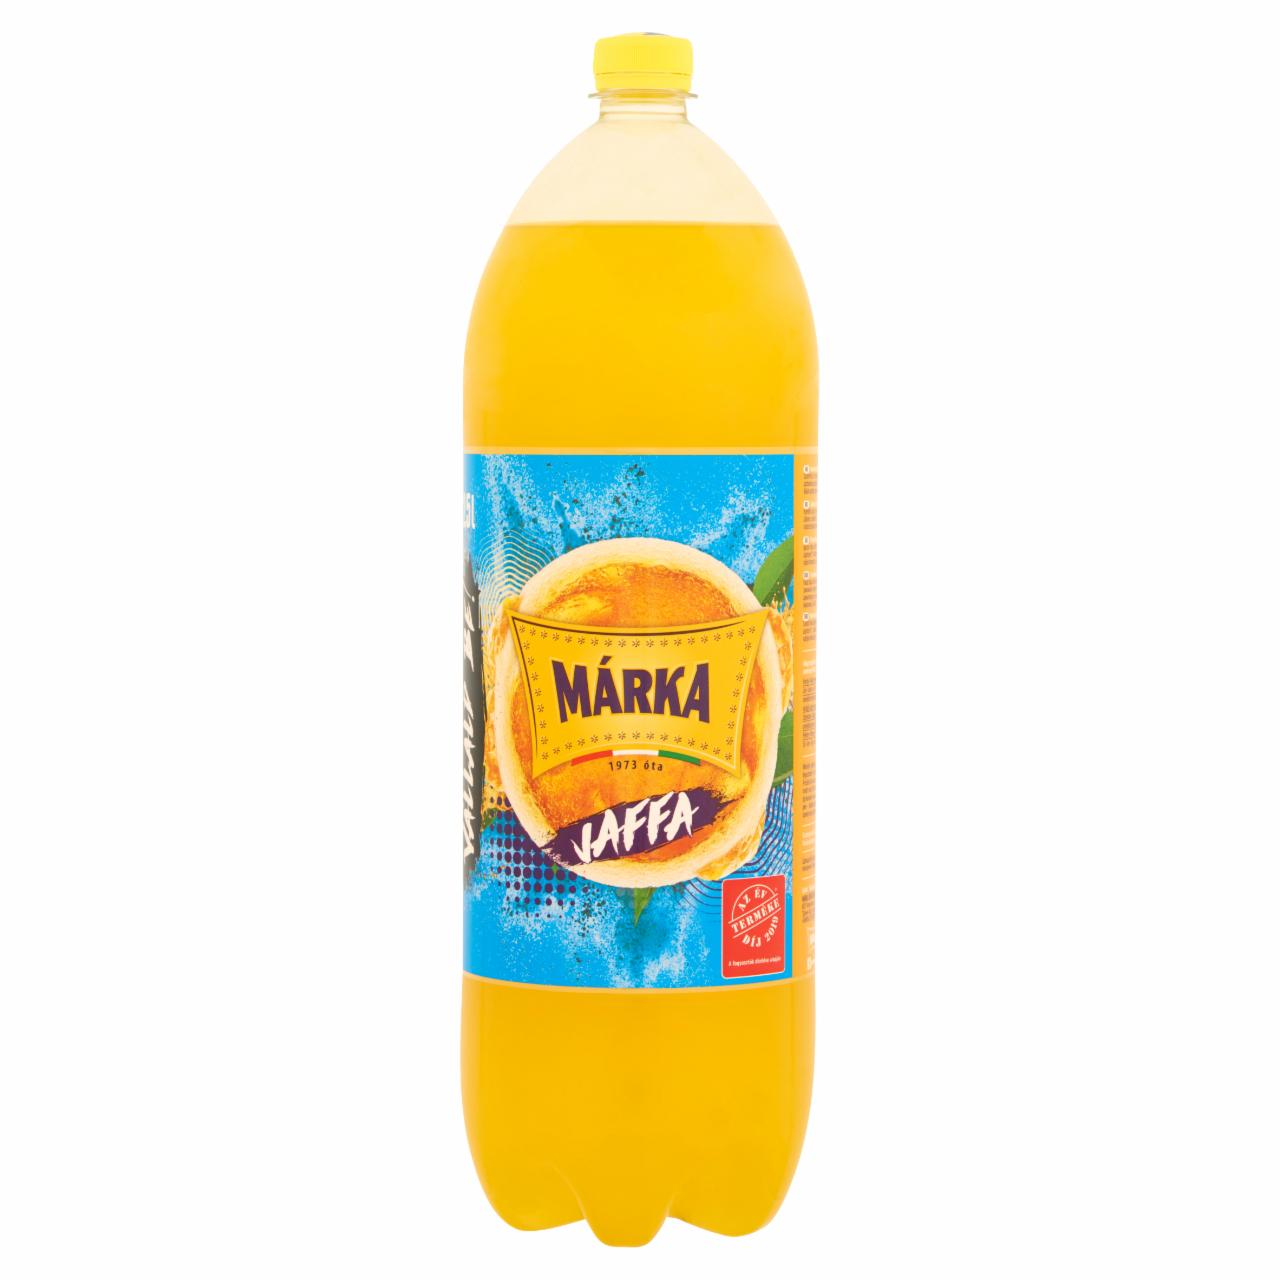 Képek - Márka Jaffa narancsízű szénsavas üdítőital, cukorral és édesítőszerekkel 2,5 l